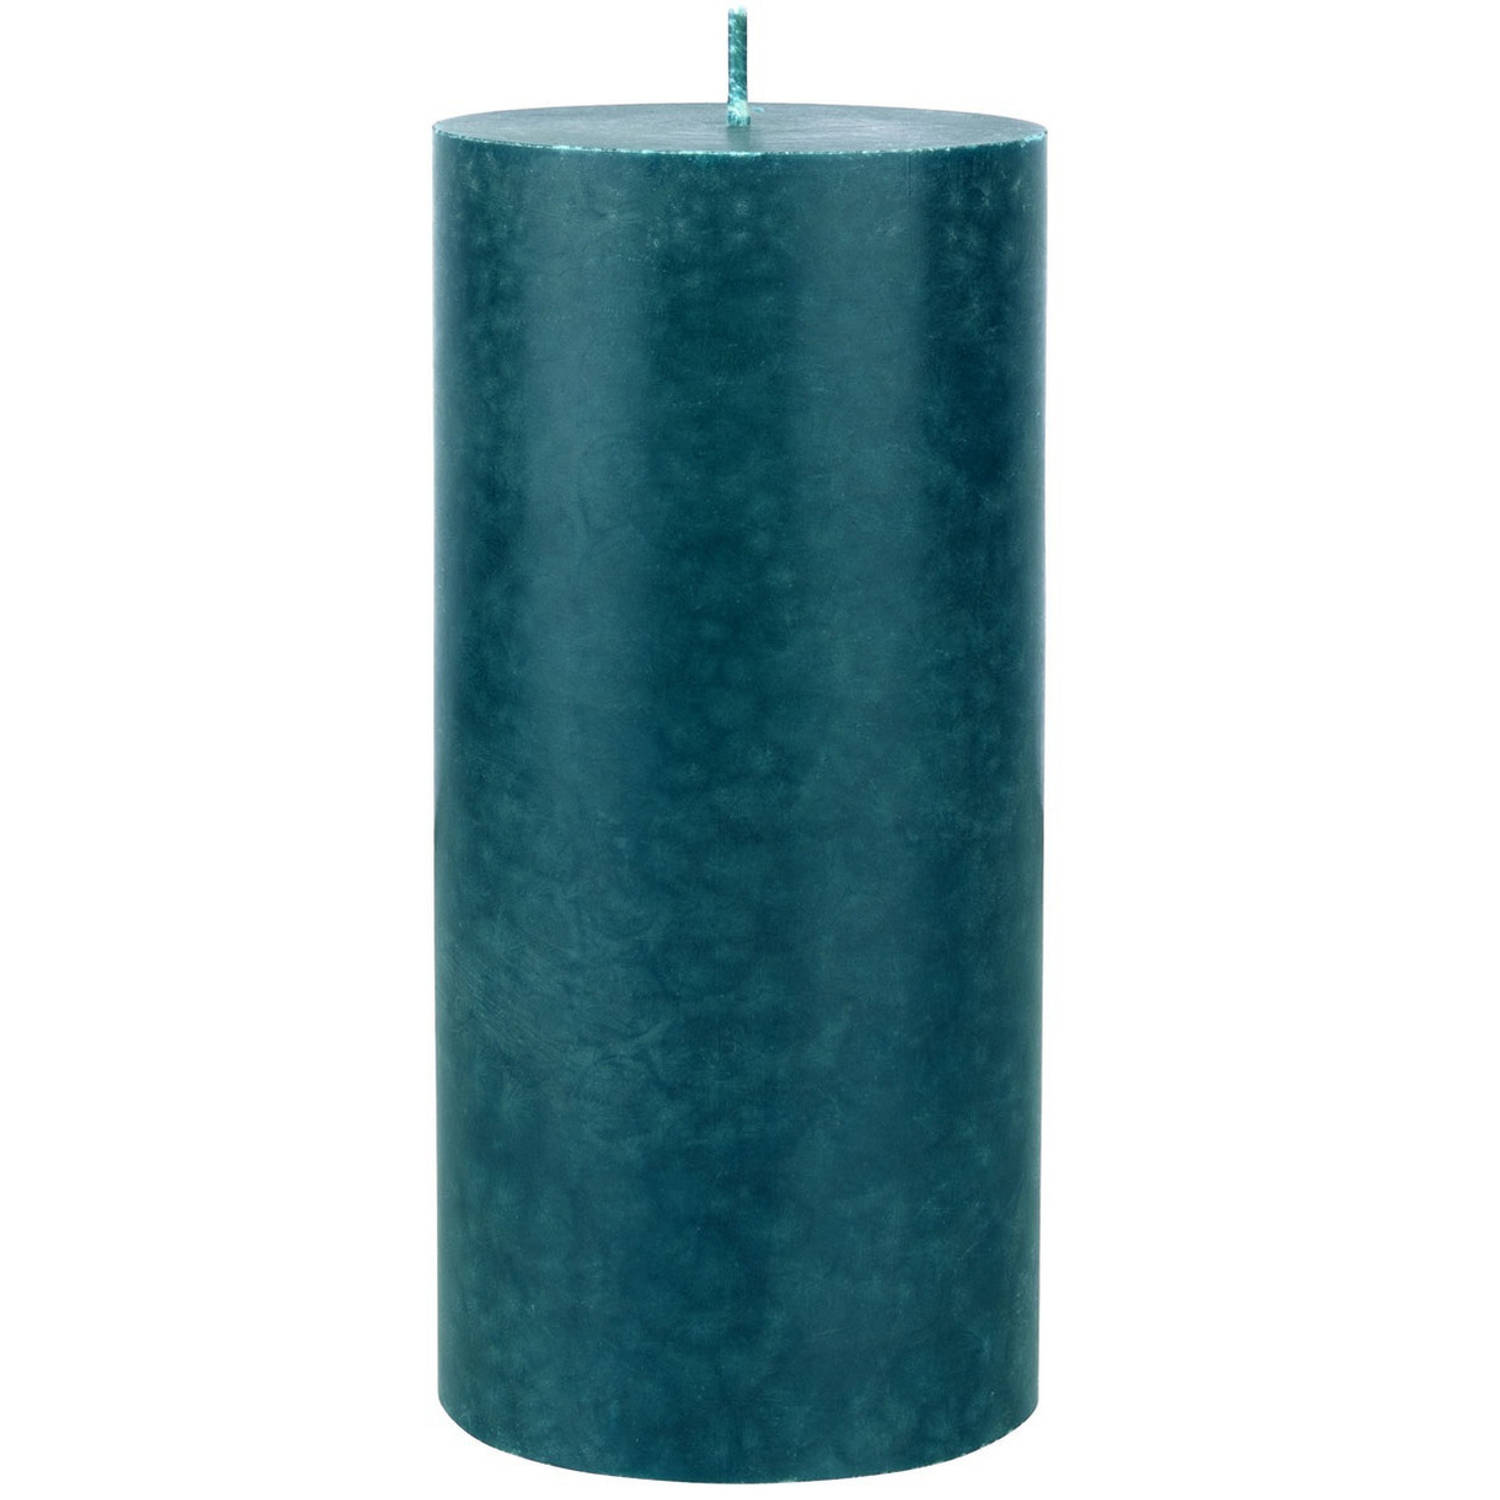 Petrol blauwe cilinderkaarsen/stompkaarsen 15 x 7 cm 50 branduren - geurloze kaarsen blauw